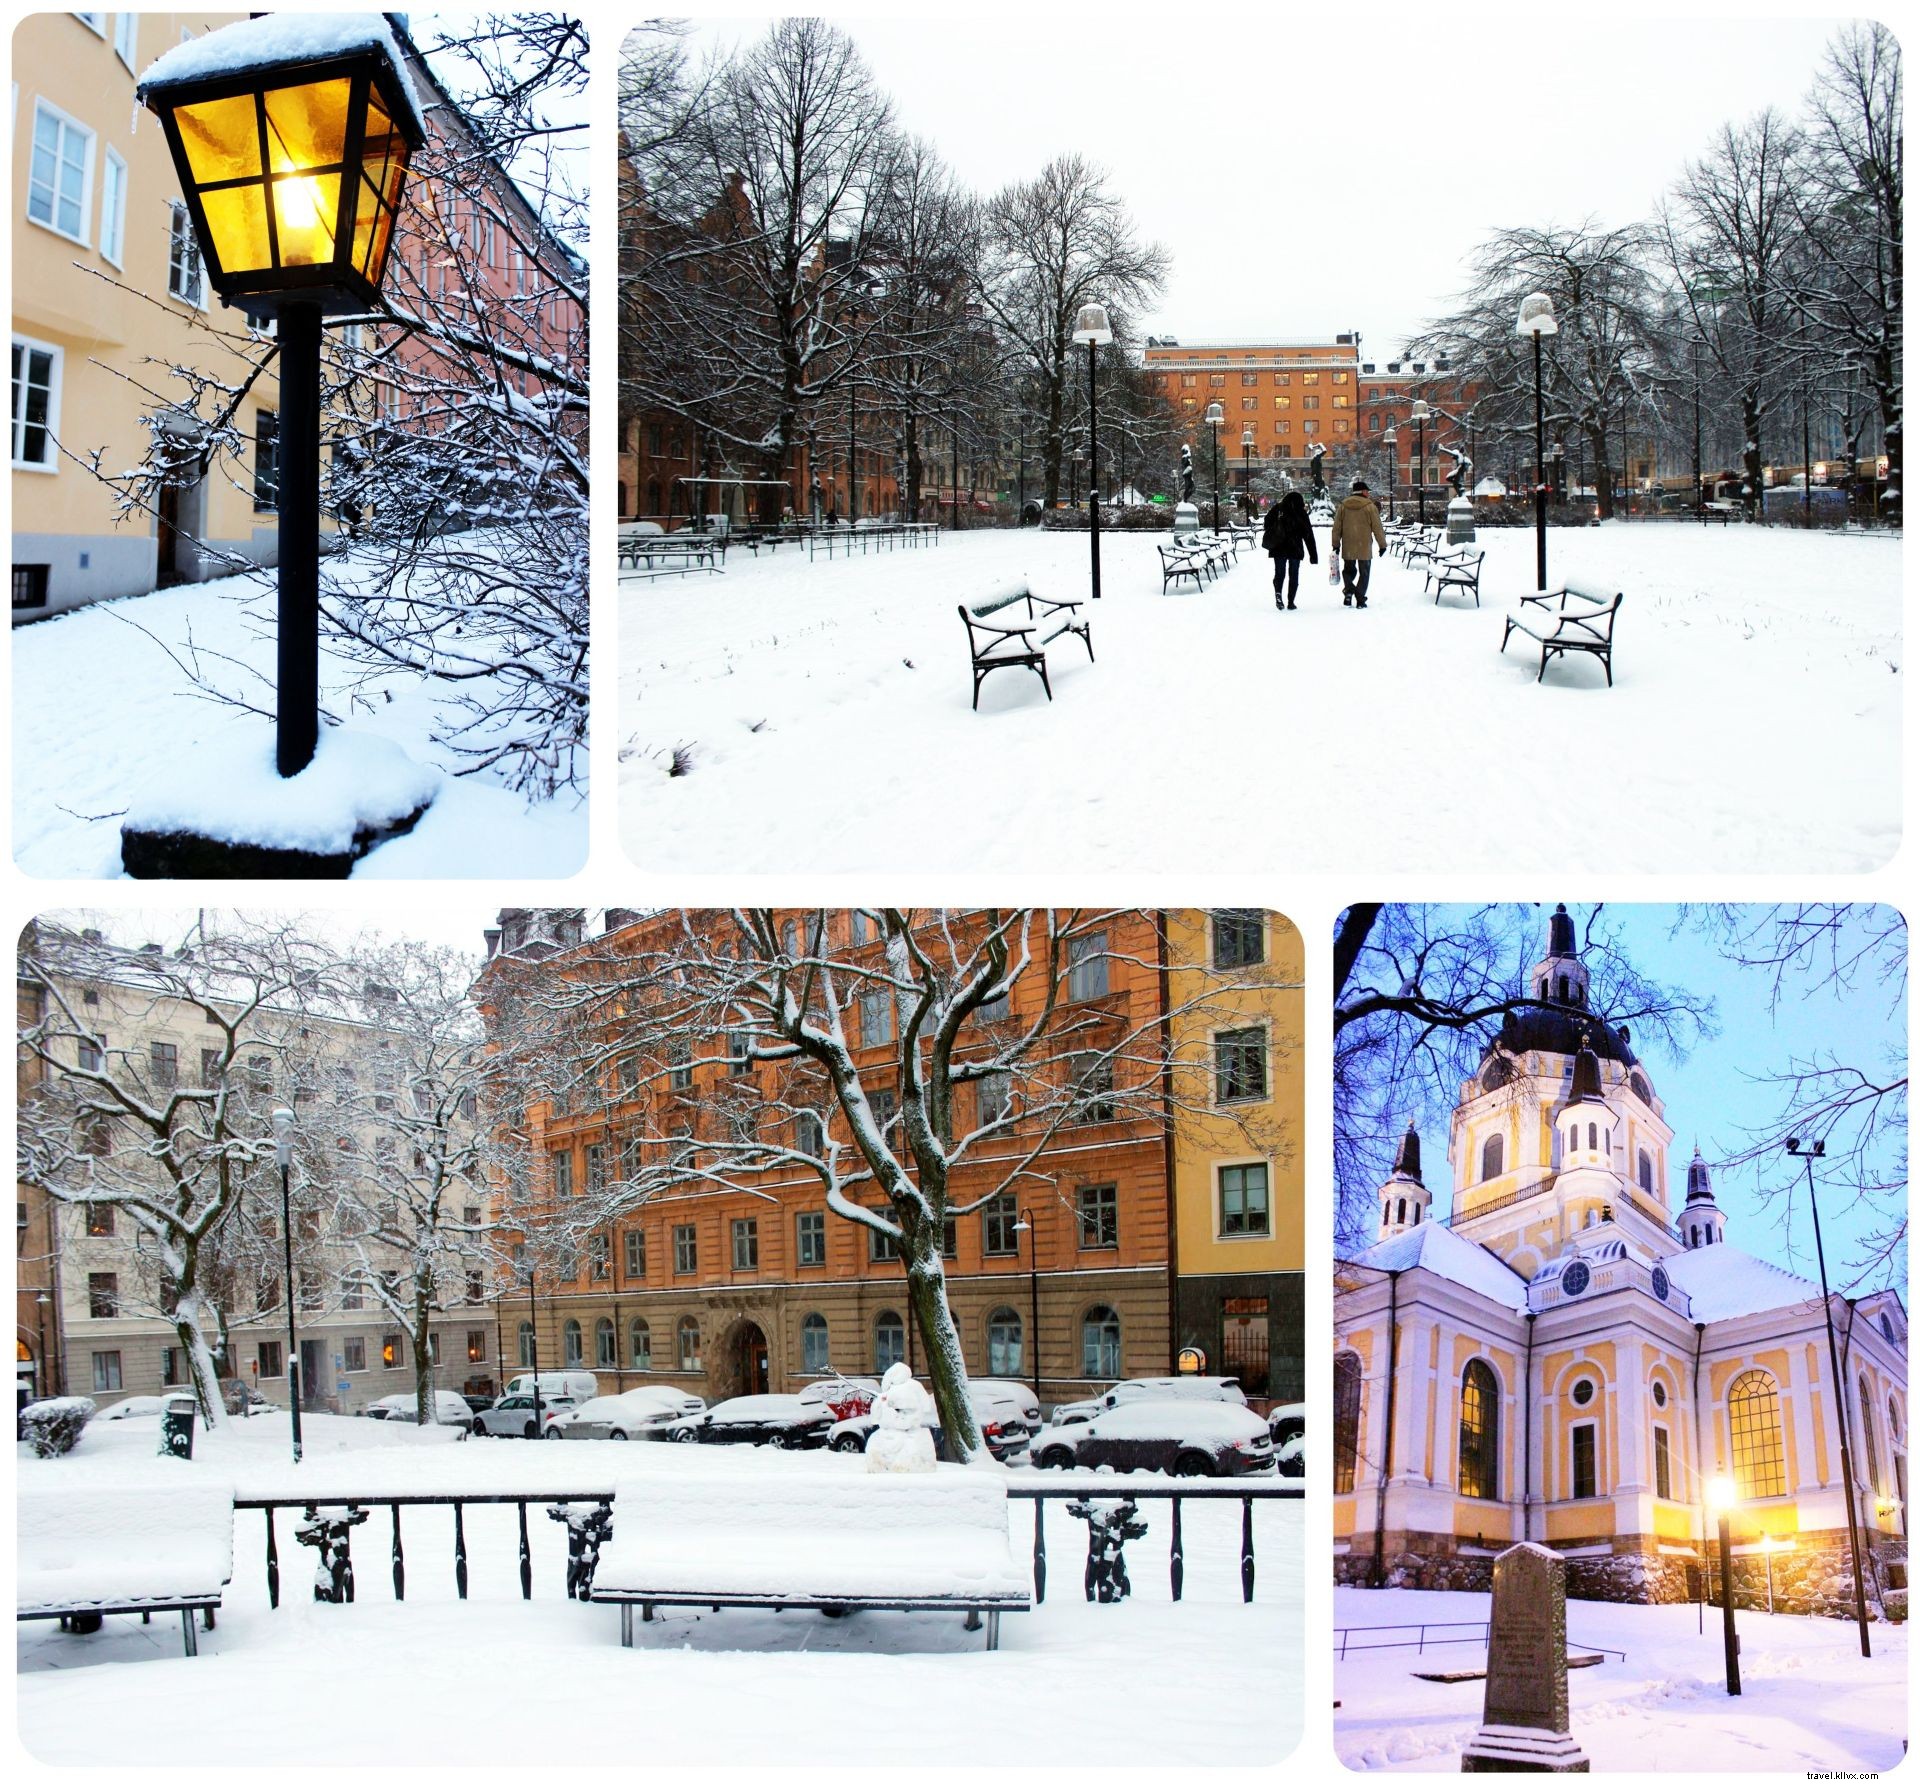 10 coisas que me surpreenderam em Estocolmo